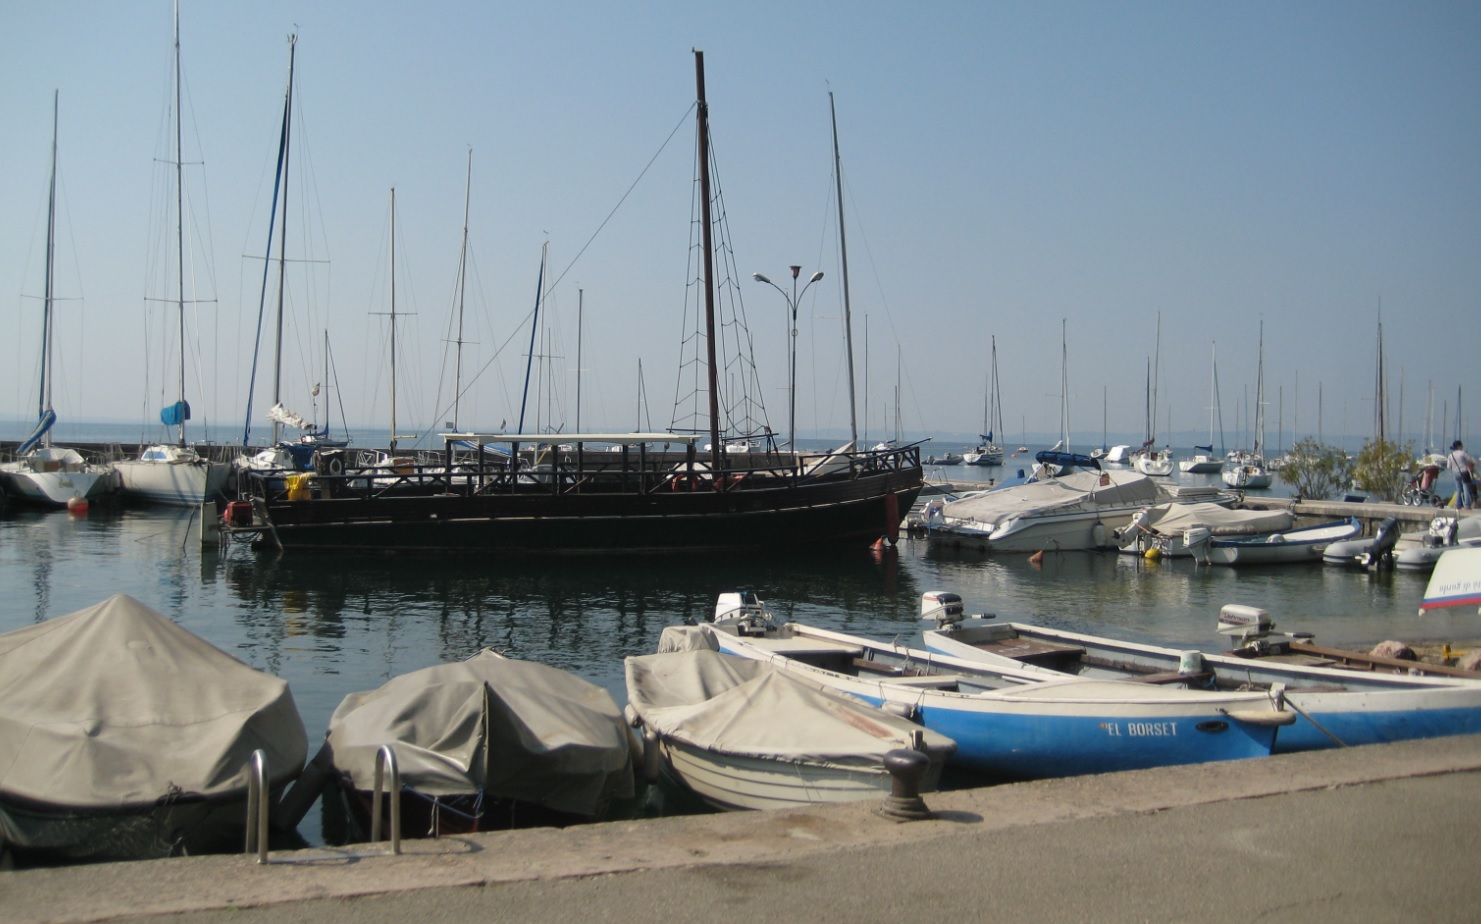 Hafen am Lago di Garda in Italia